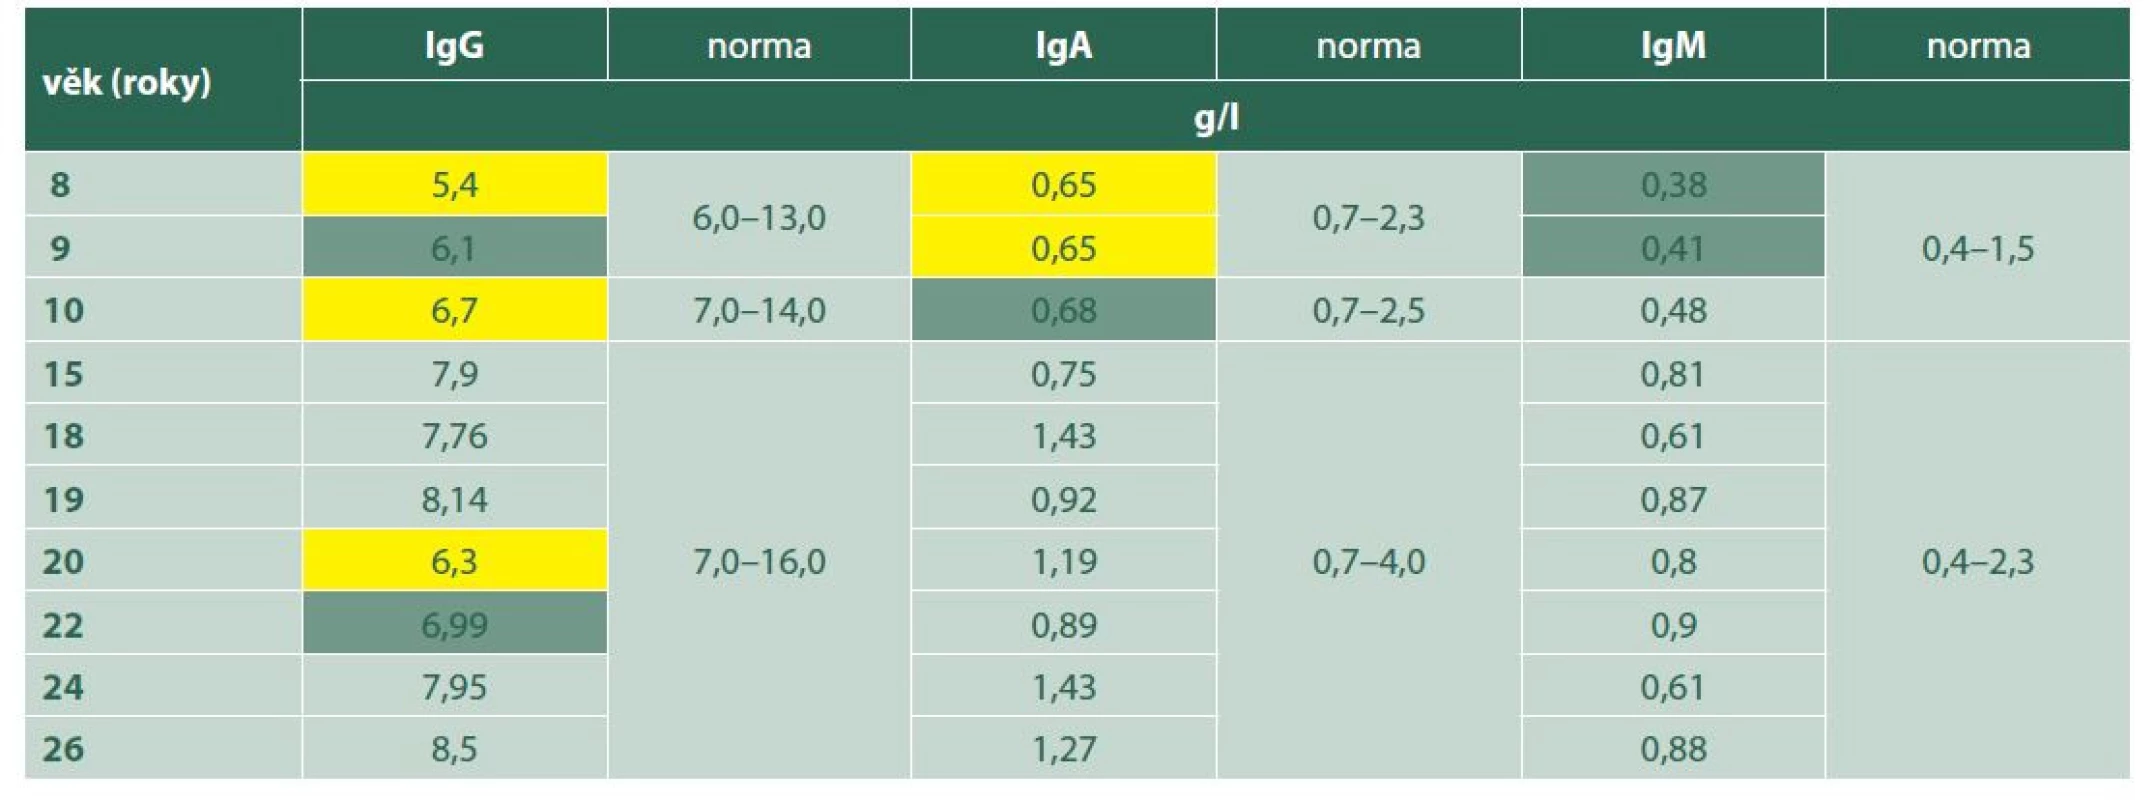 Imunoglobuliny IgG, IgA, IgM ve vztahu k věku: snížené hodnoty (žlutě), hraniční hodnoty (zeleně)